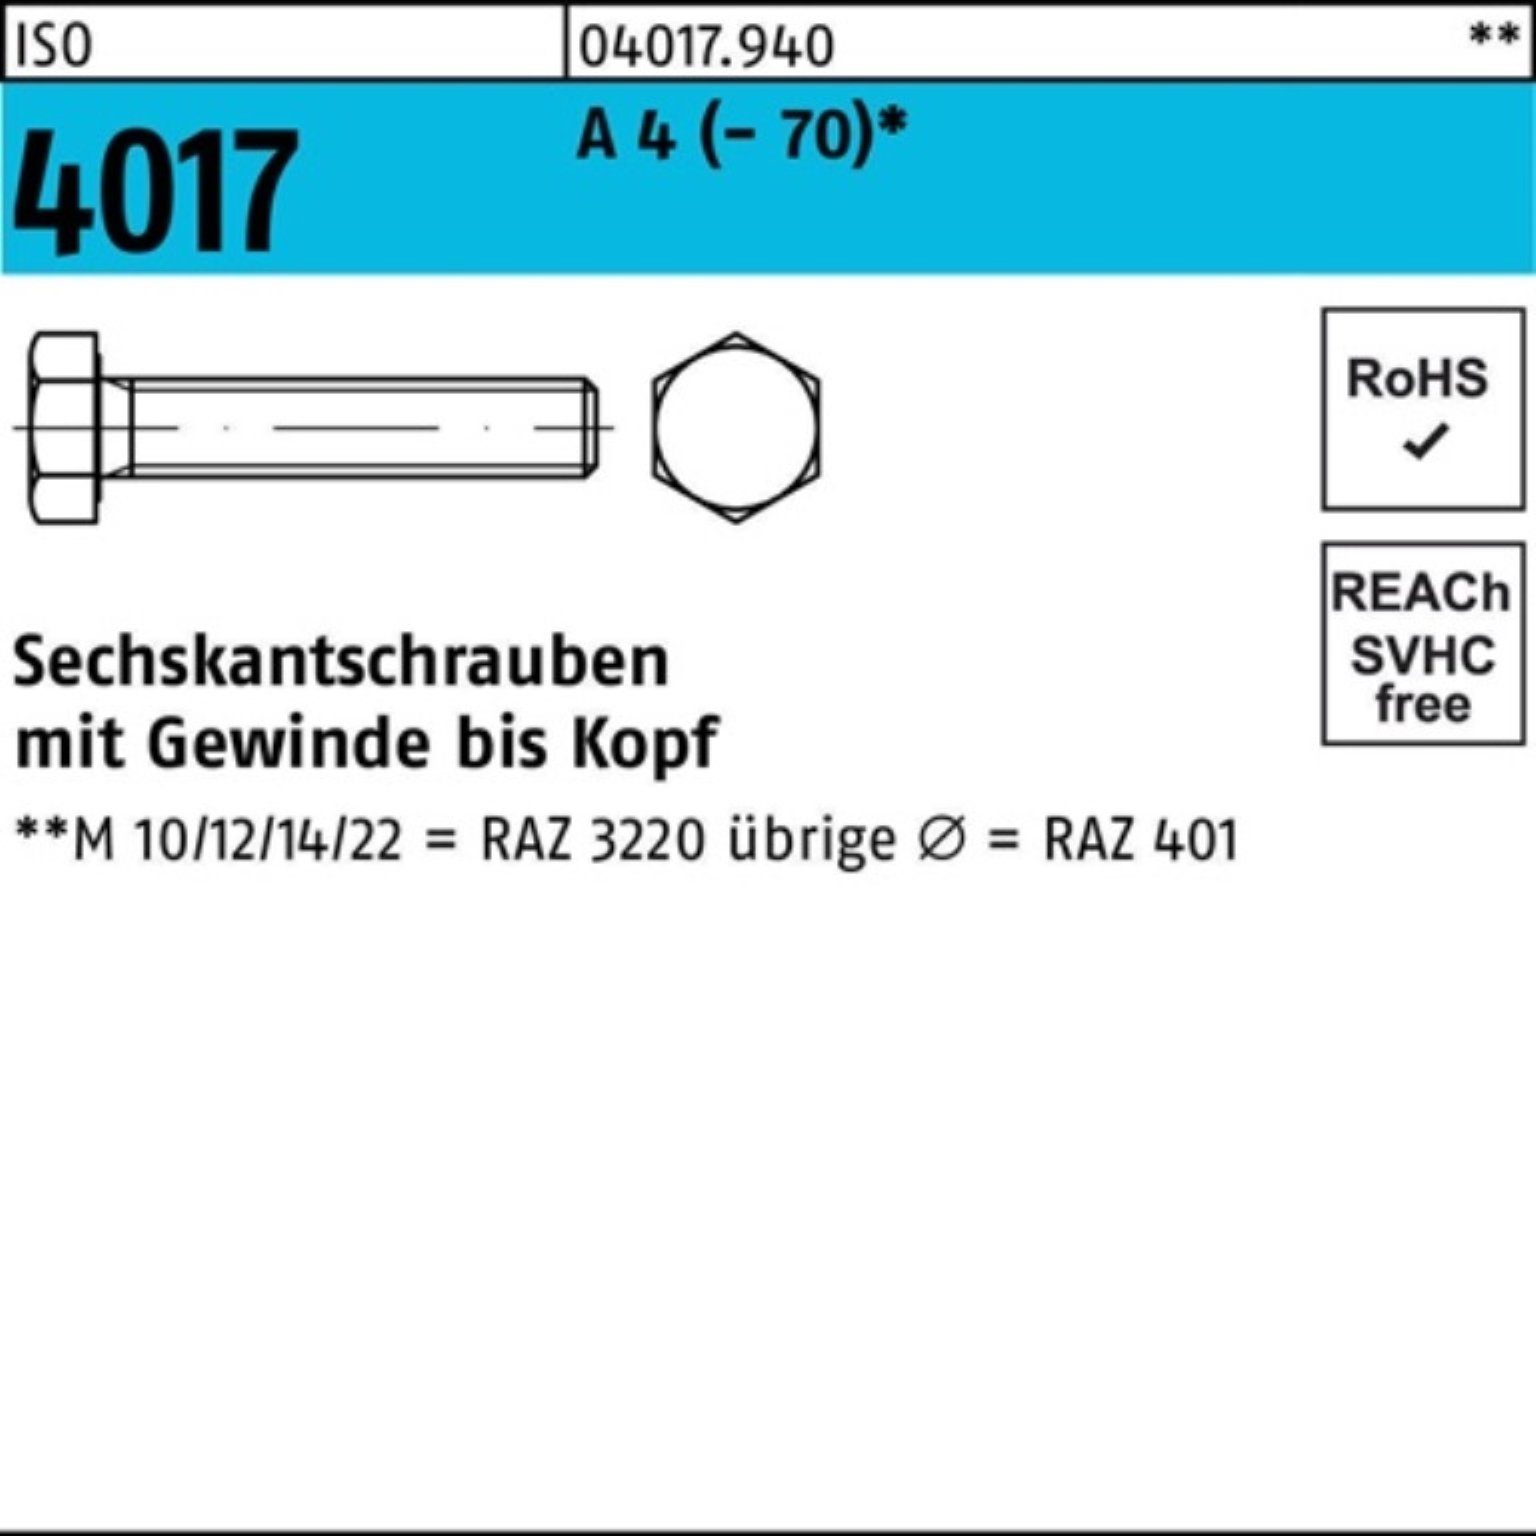 Bufab Sechskantschraube Stück 80 100er M16x (70) 4 VG Sechskantschraube 25 Pack 4017 ISO A